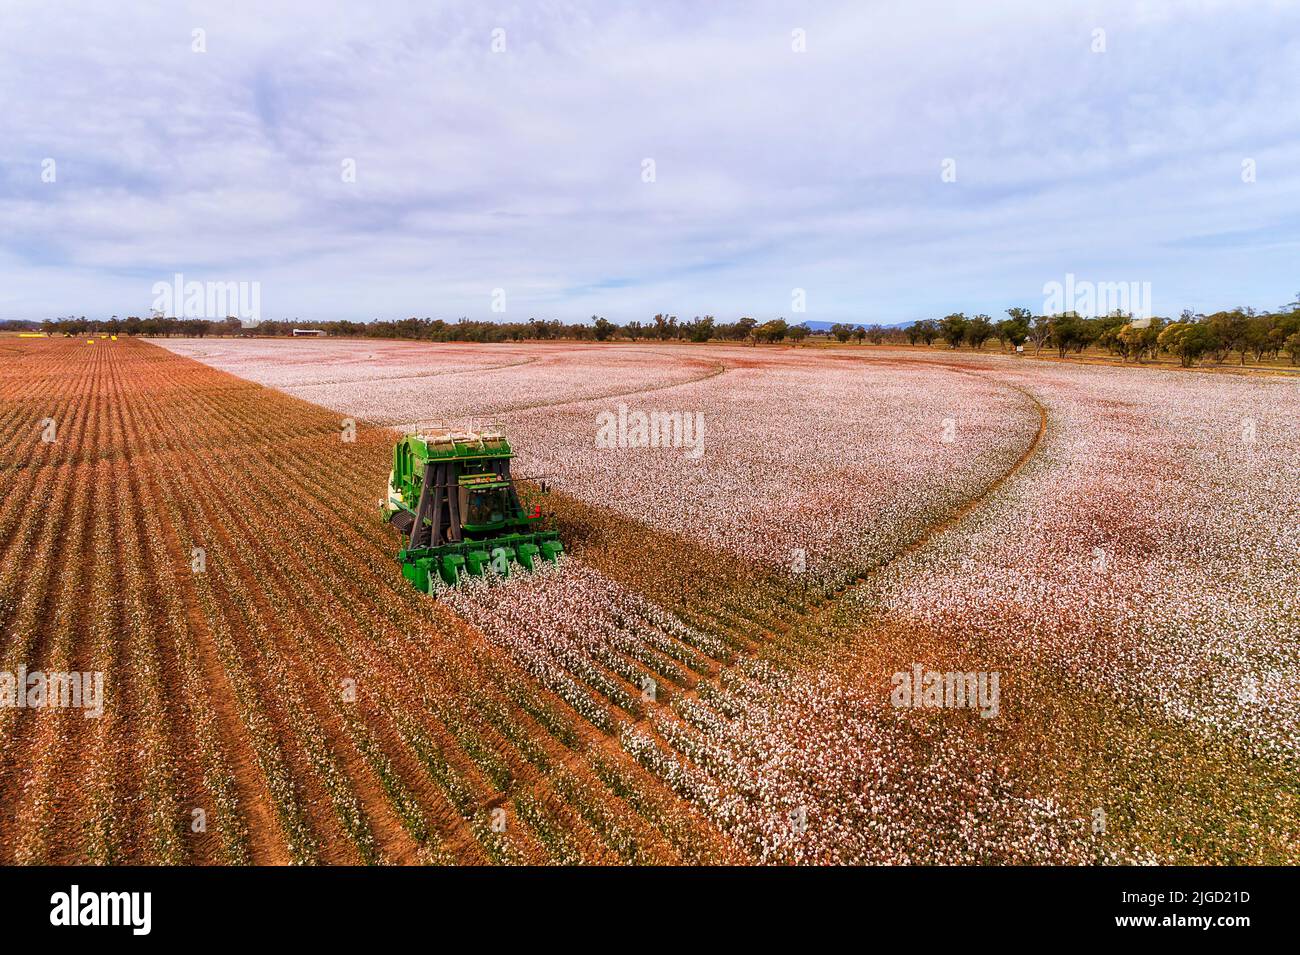 Baumwollernte Mähdrescher Traktor auf braunem Boden landwirtschaftlichen Feld in Australien - Landwirtschaft. Stockfoto